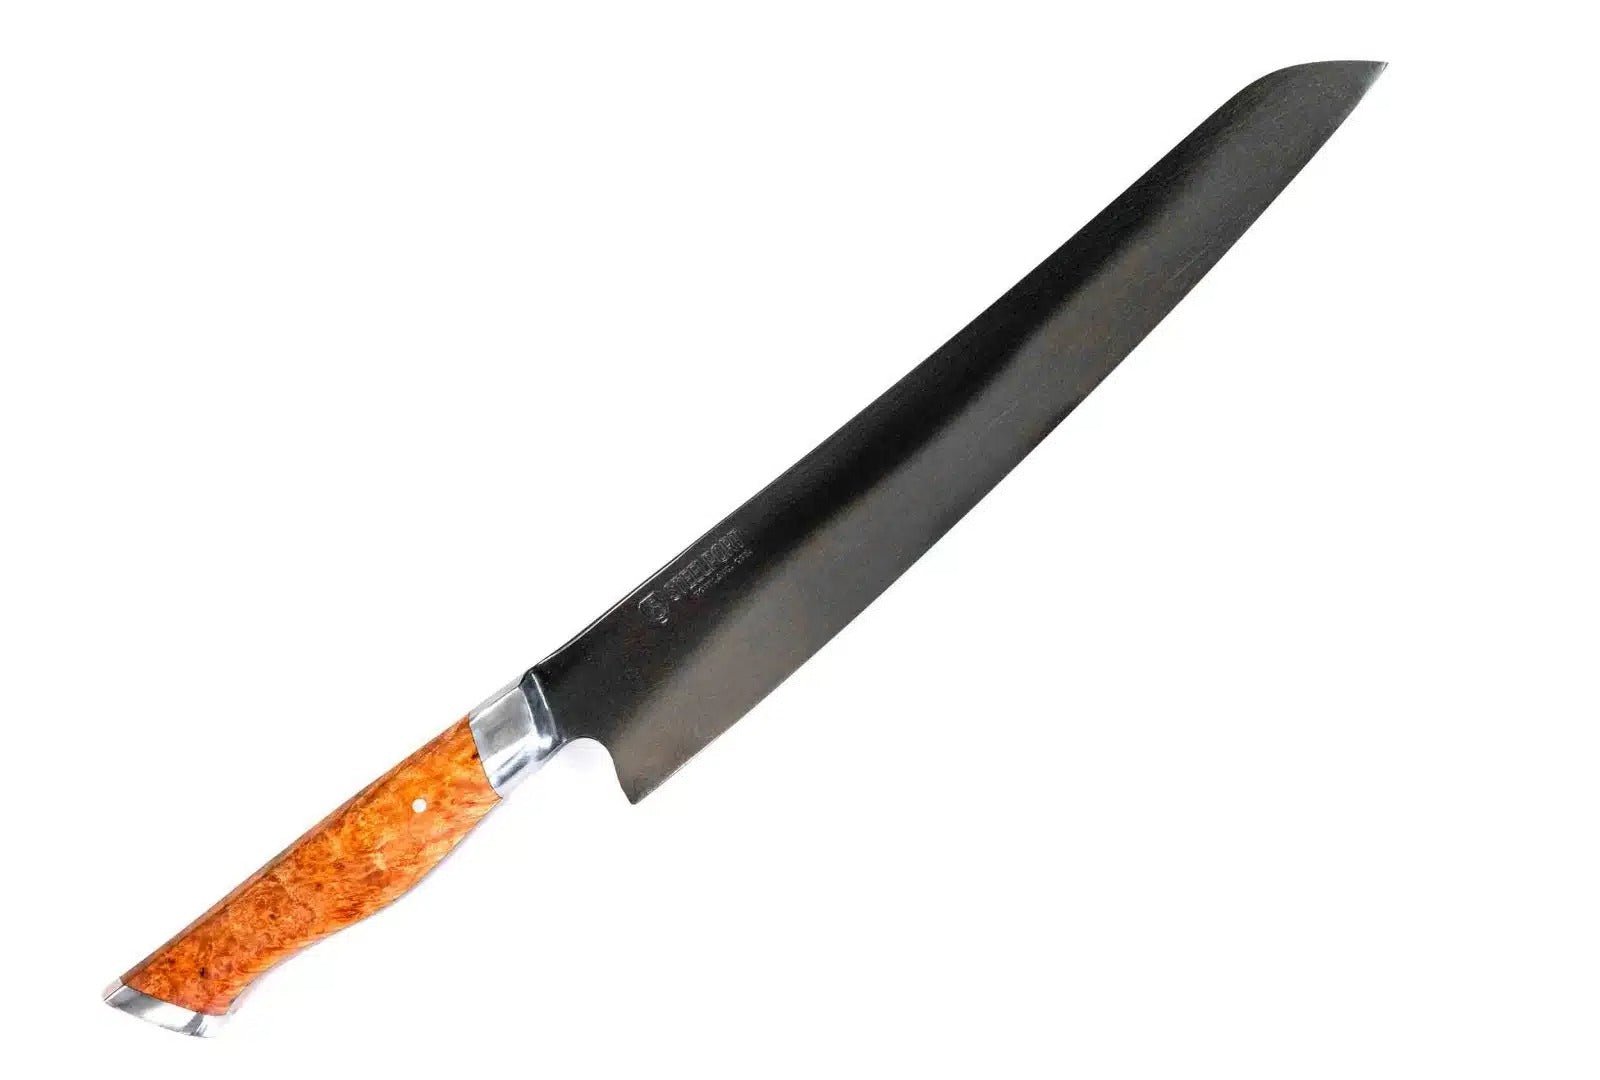 Franklin Barbecue Slicer + Prep Knife Bundle